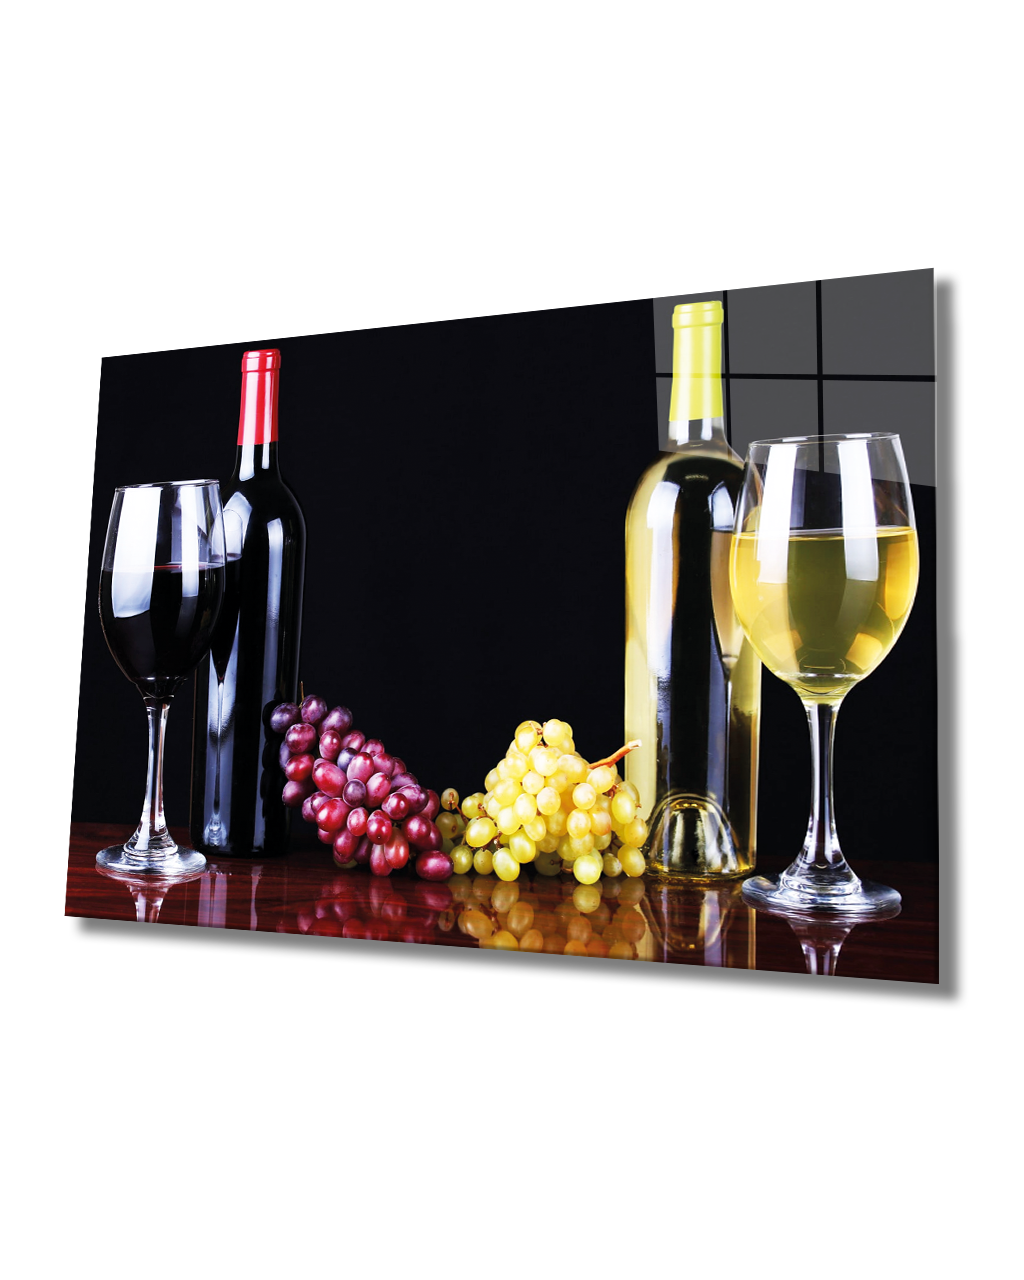 Üzüm ve Şarap Cam Tablo  4mm Dayanıklı Temperli Cam, Grape Wall Art